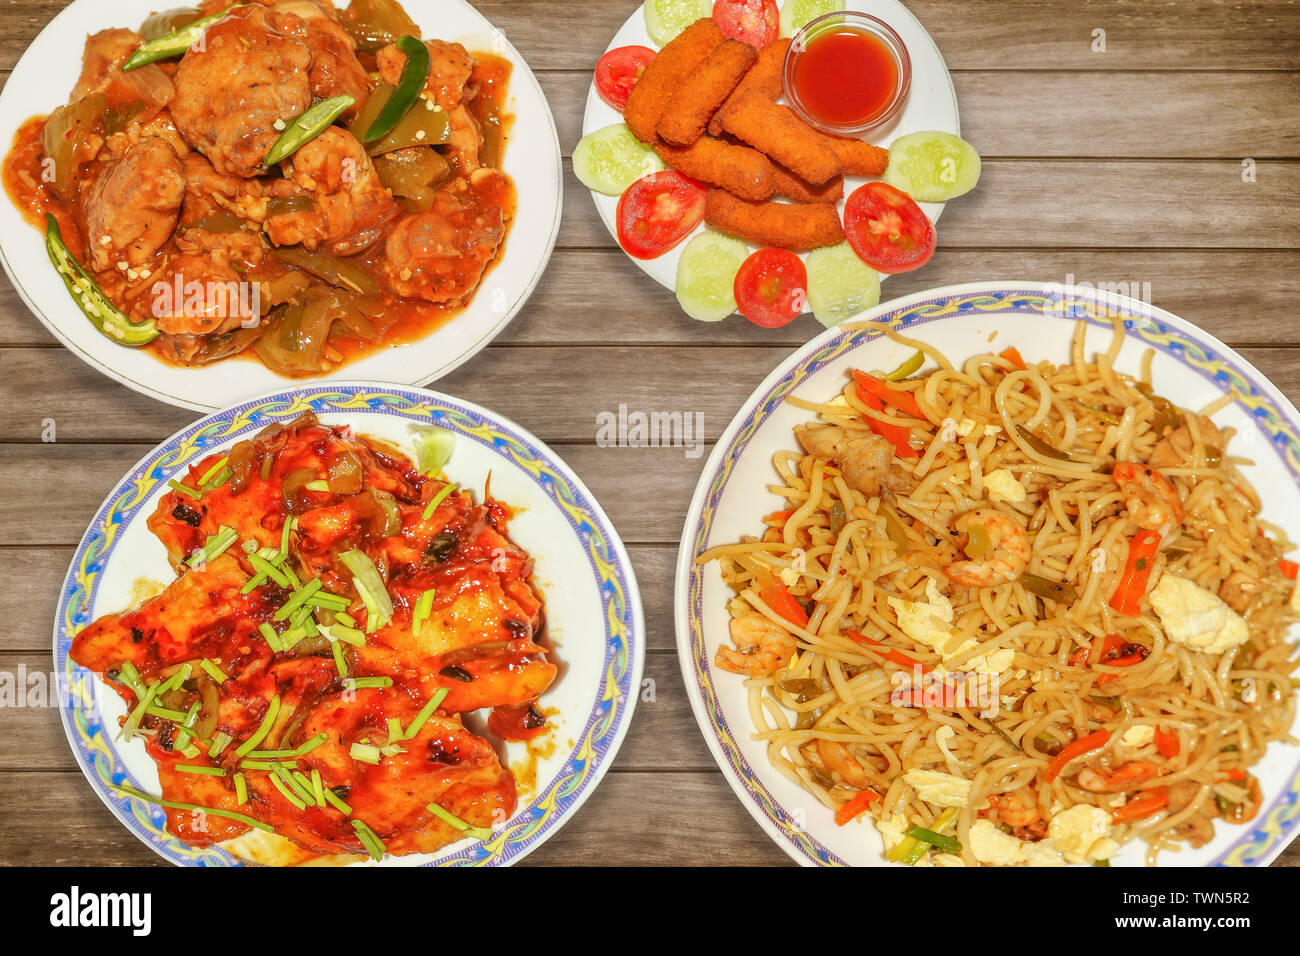 Indiens les repas de poulet épicé au piment chowmein et red hot chili poulet Poisson croustillant avec les bâtonnets de poisson servi sur table en bois Banque D'Images